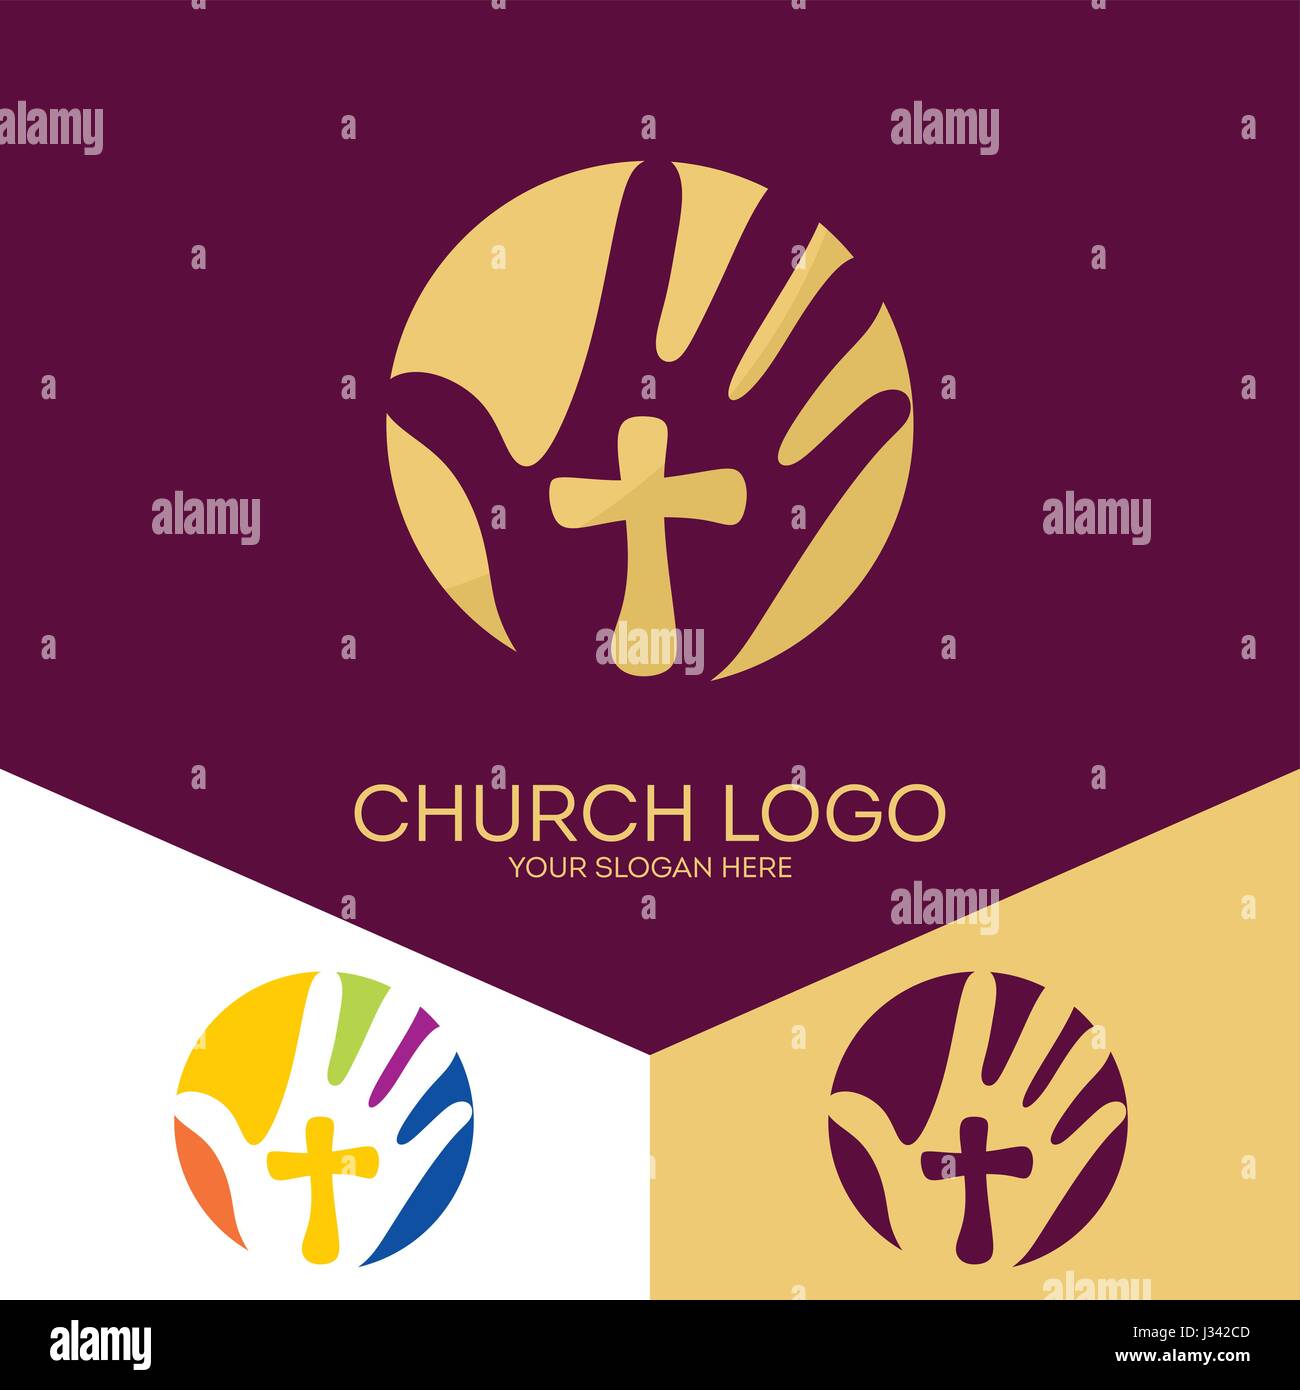 Logo der Kirche. Christliche Symbole. Die Hand des Herrn, eine Erinnerung an das heilige Opfer Jesu Christi. Stock Vektor